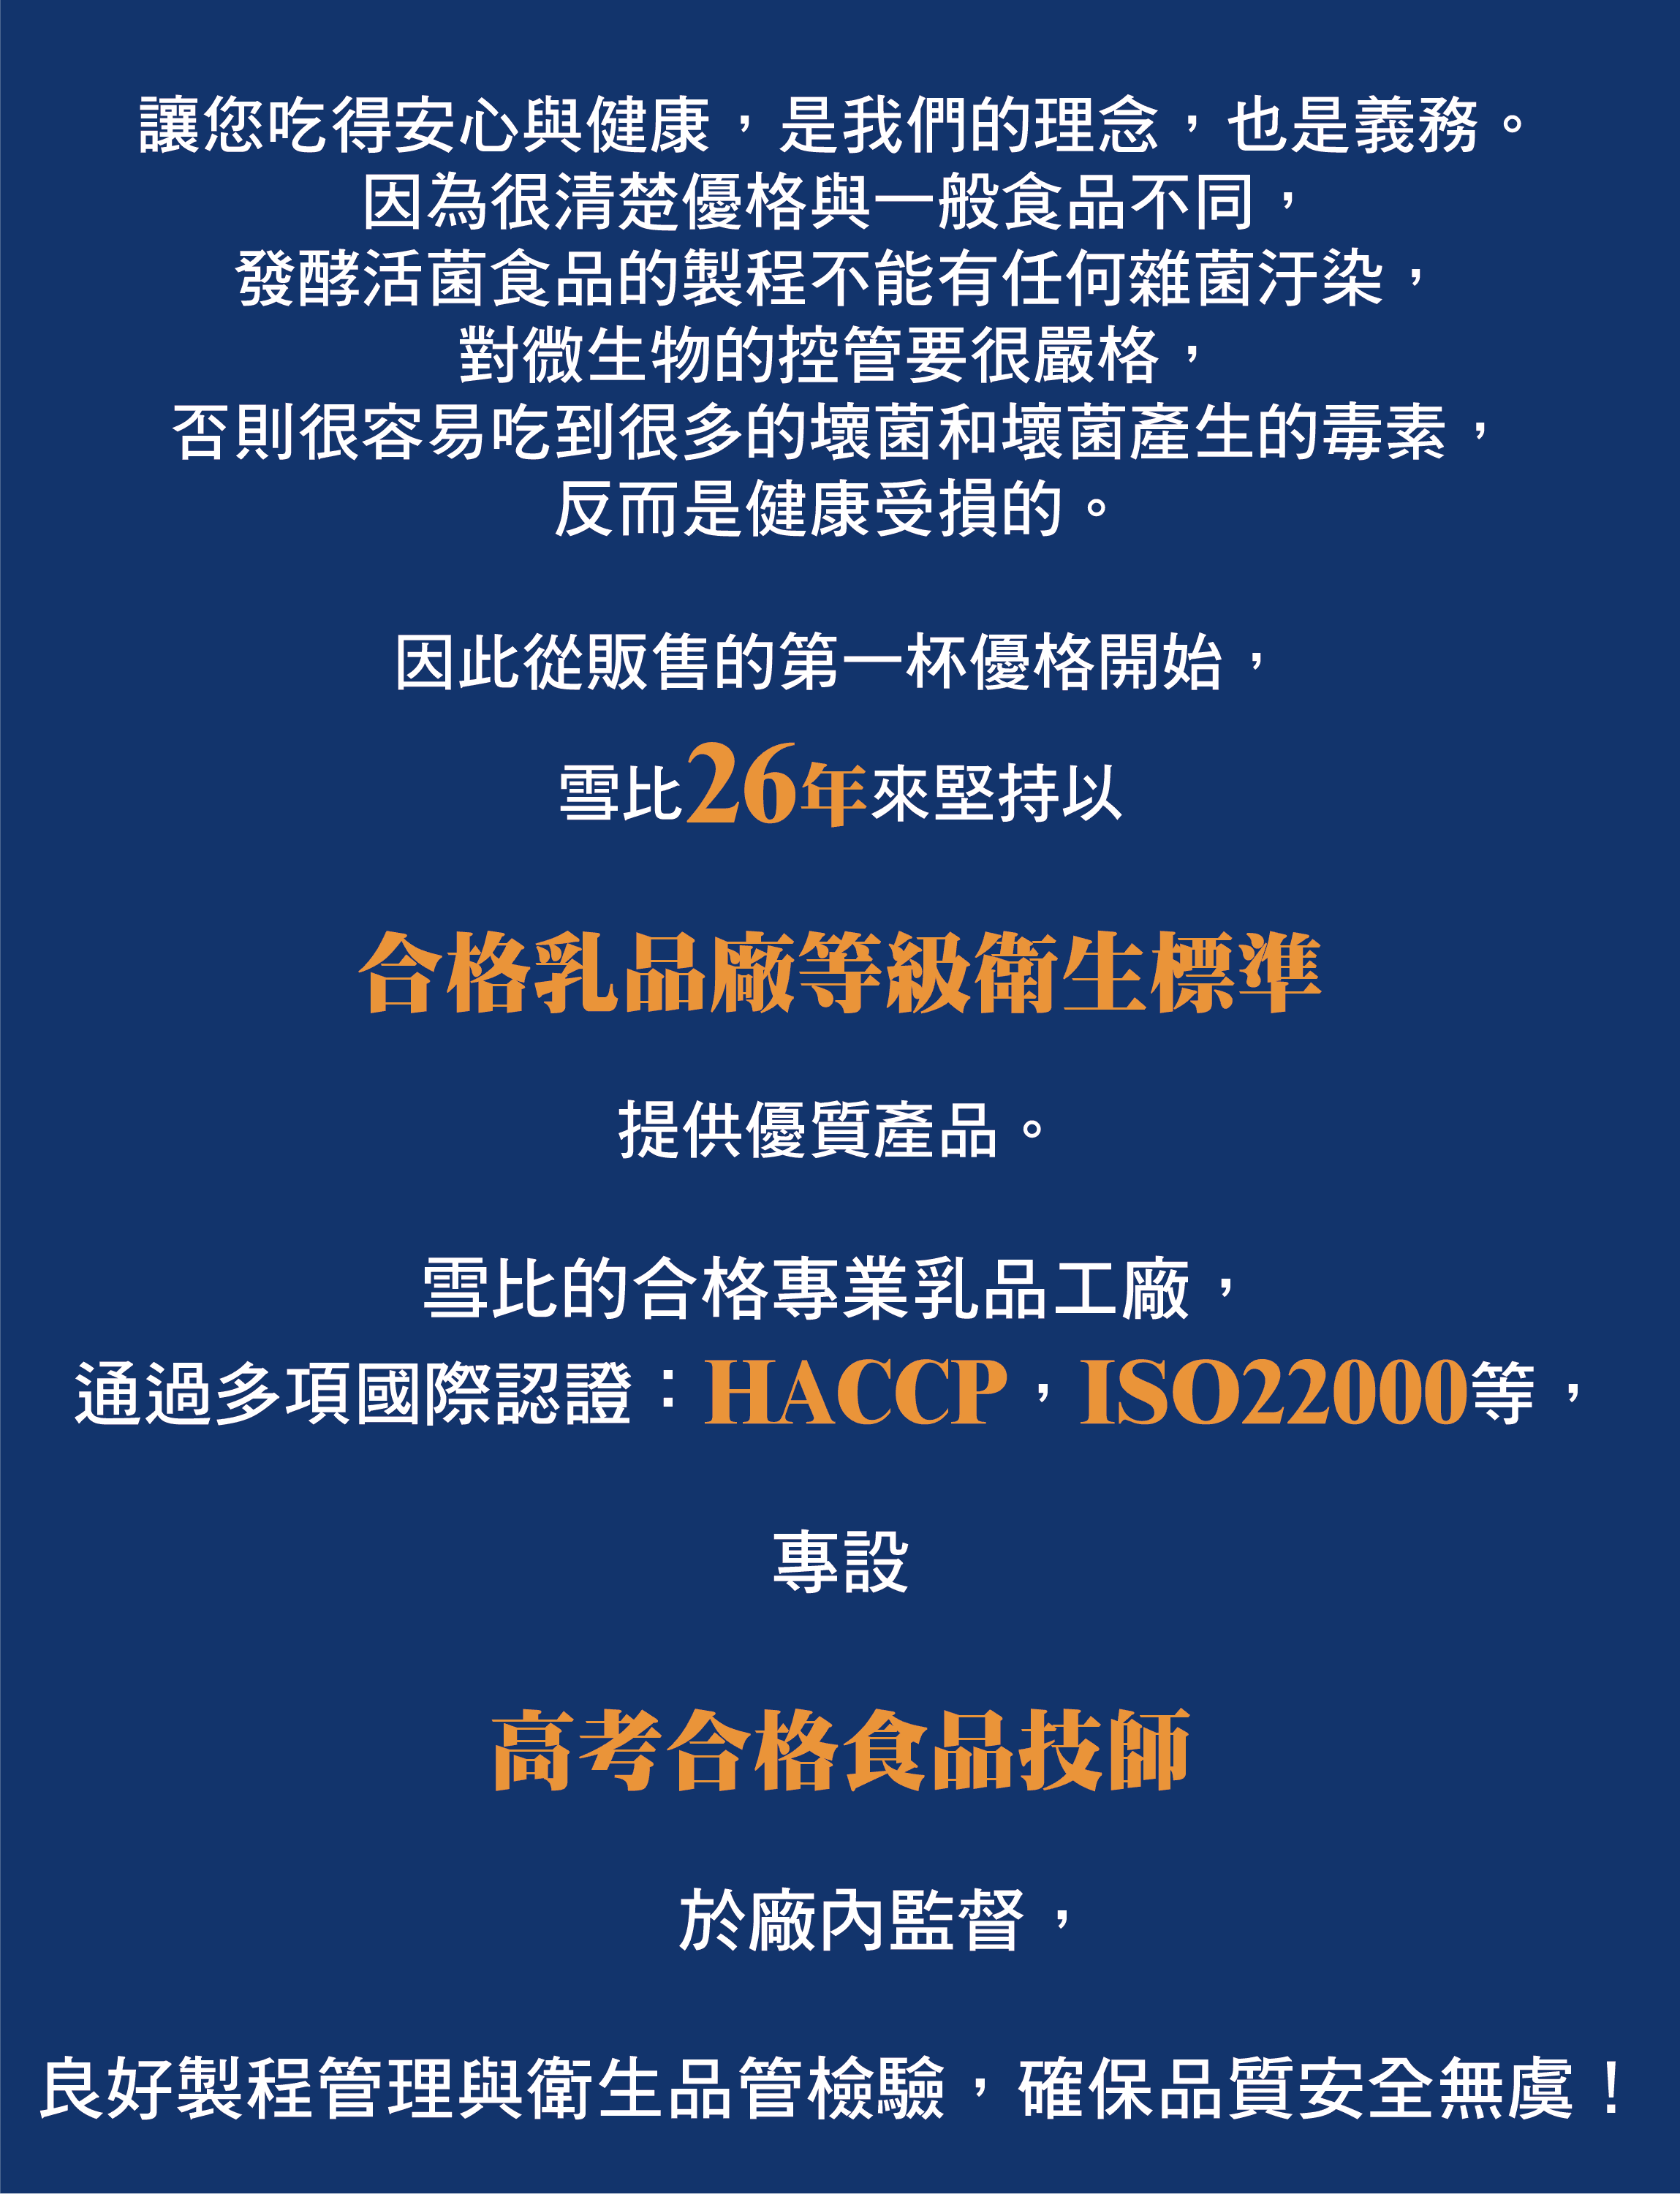 隆昌食品-工廠環境簡介2-1.png